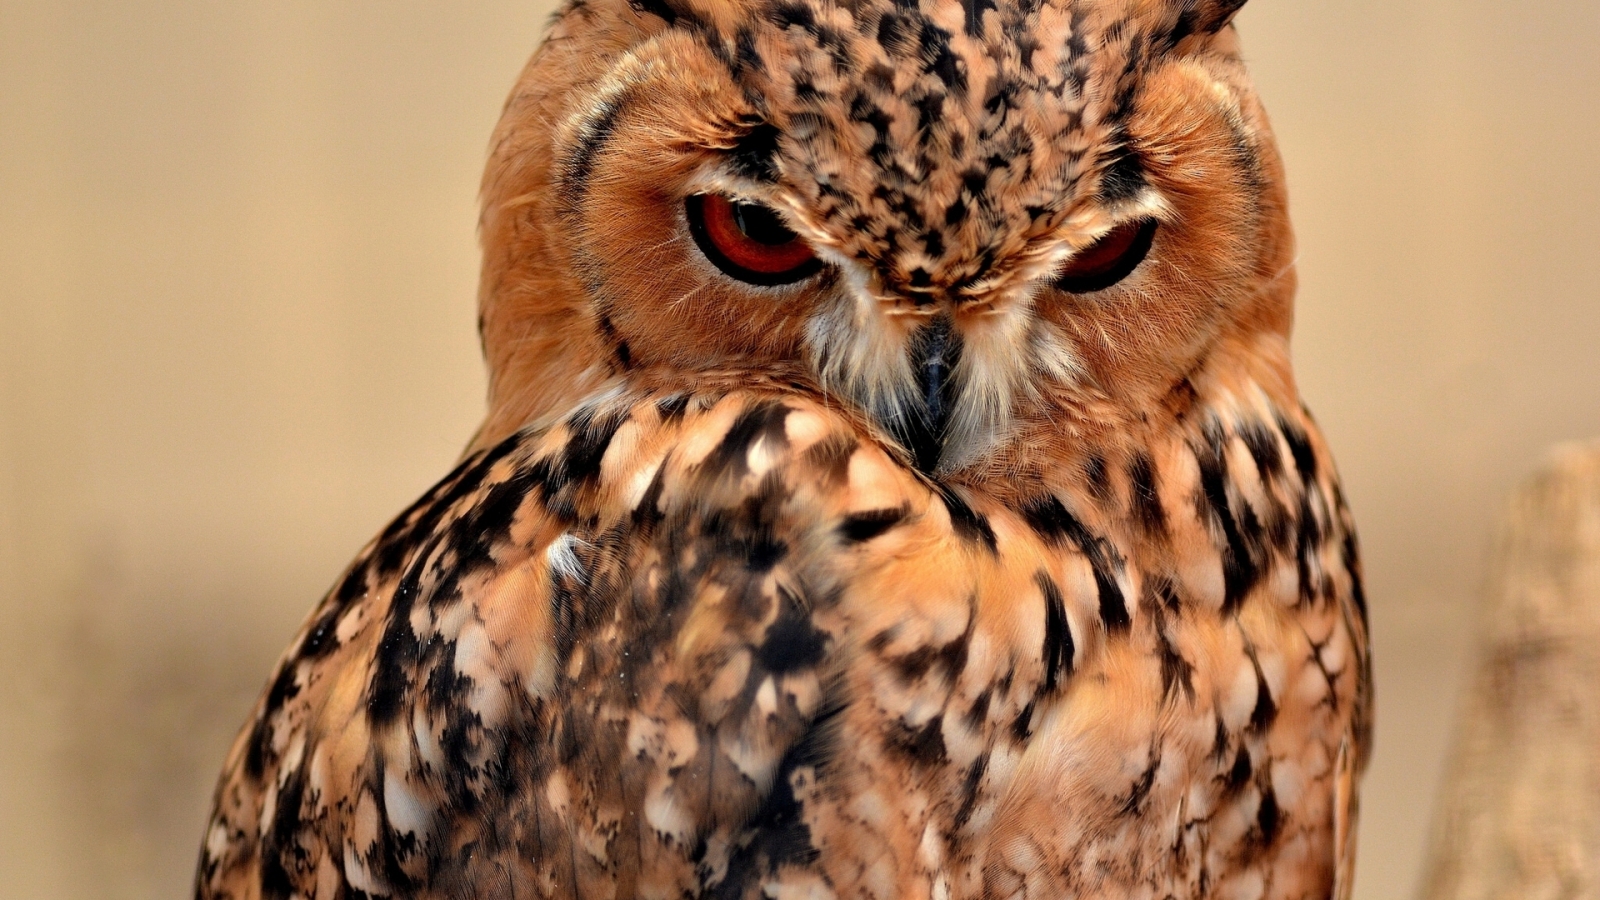 Desert Eagle Owl for 1600 x 900 HDTV resolution